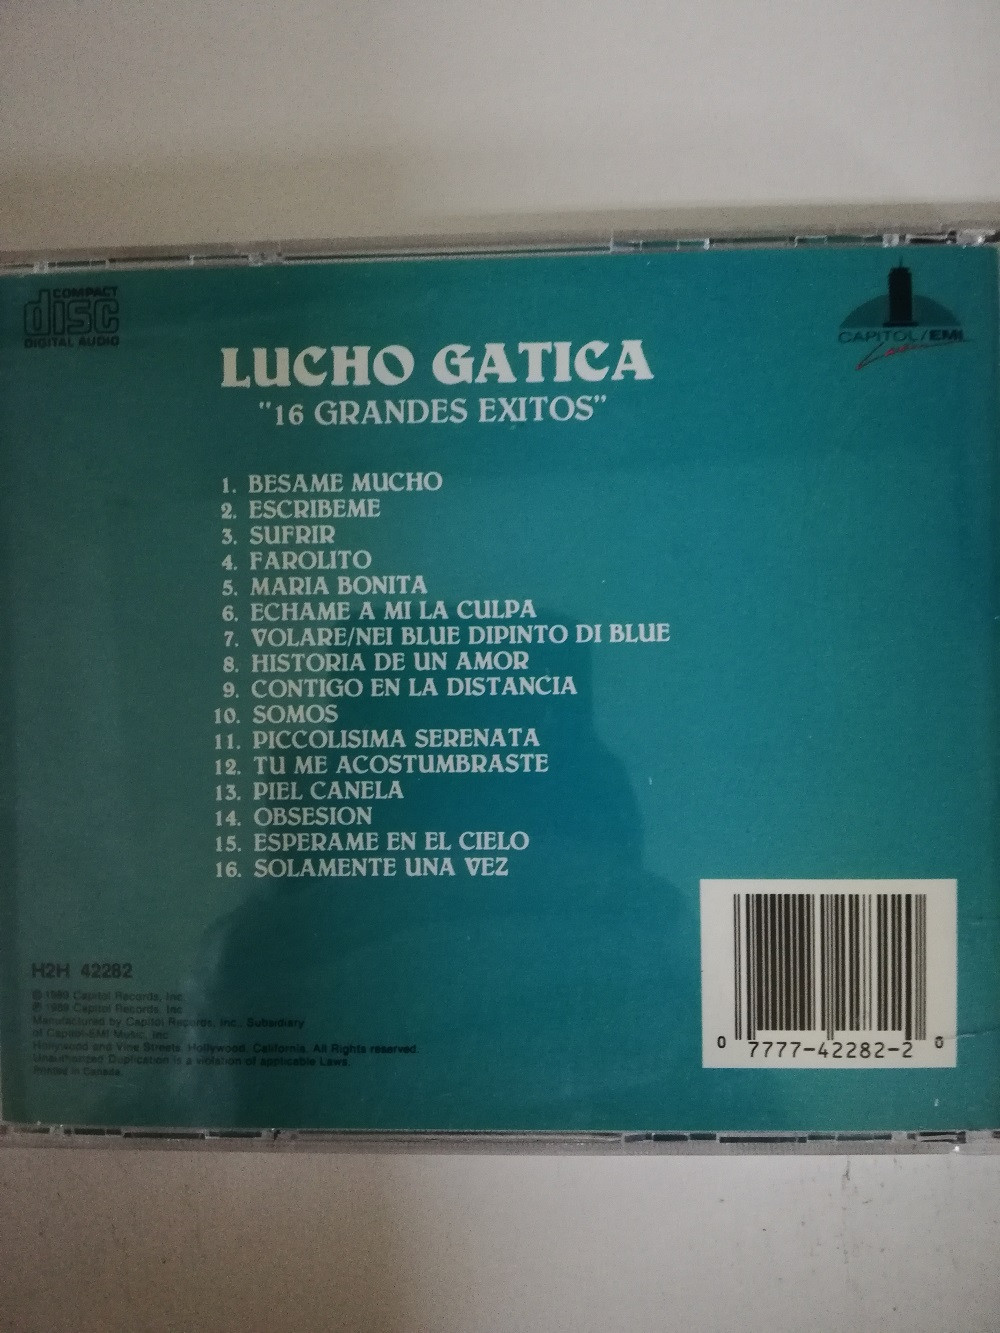 Imagen CD LUCHO GATICA - 16 GRANDES EXITOS 2